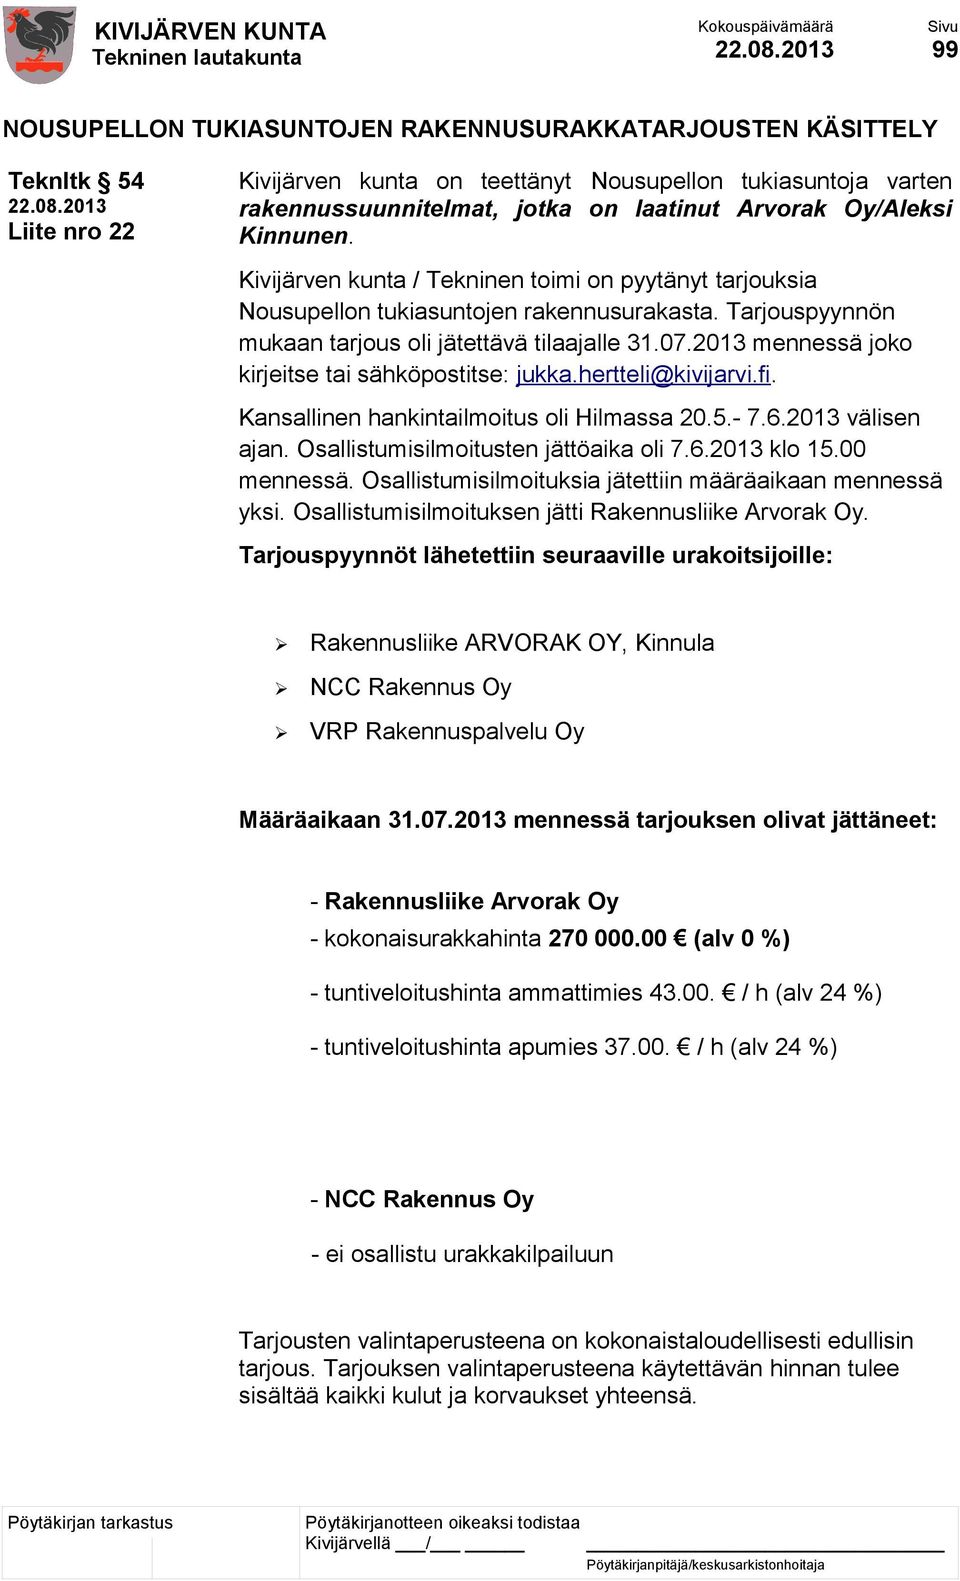 2013 mennessä joko kirjeitse tai sähköpostitse: jukka.hertteli@kivijarvi.fi. Kansallinen hankintailmoitus oli Hilmassa 20.5.- 7.6.2013 välisen ajan. Osallistumisilmoitusten jättöaika oli 7.6.2013 klo 15.